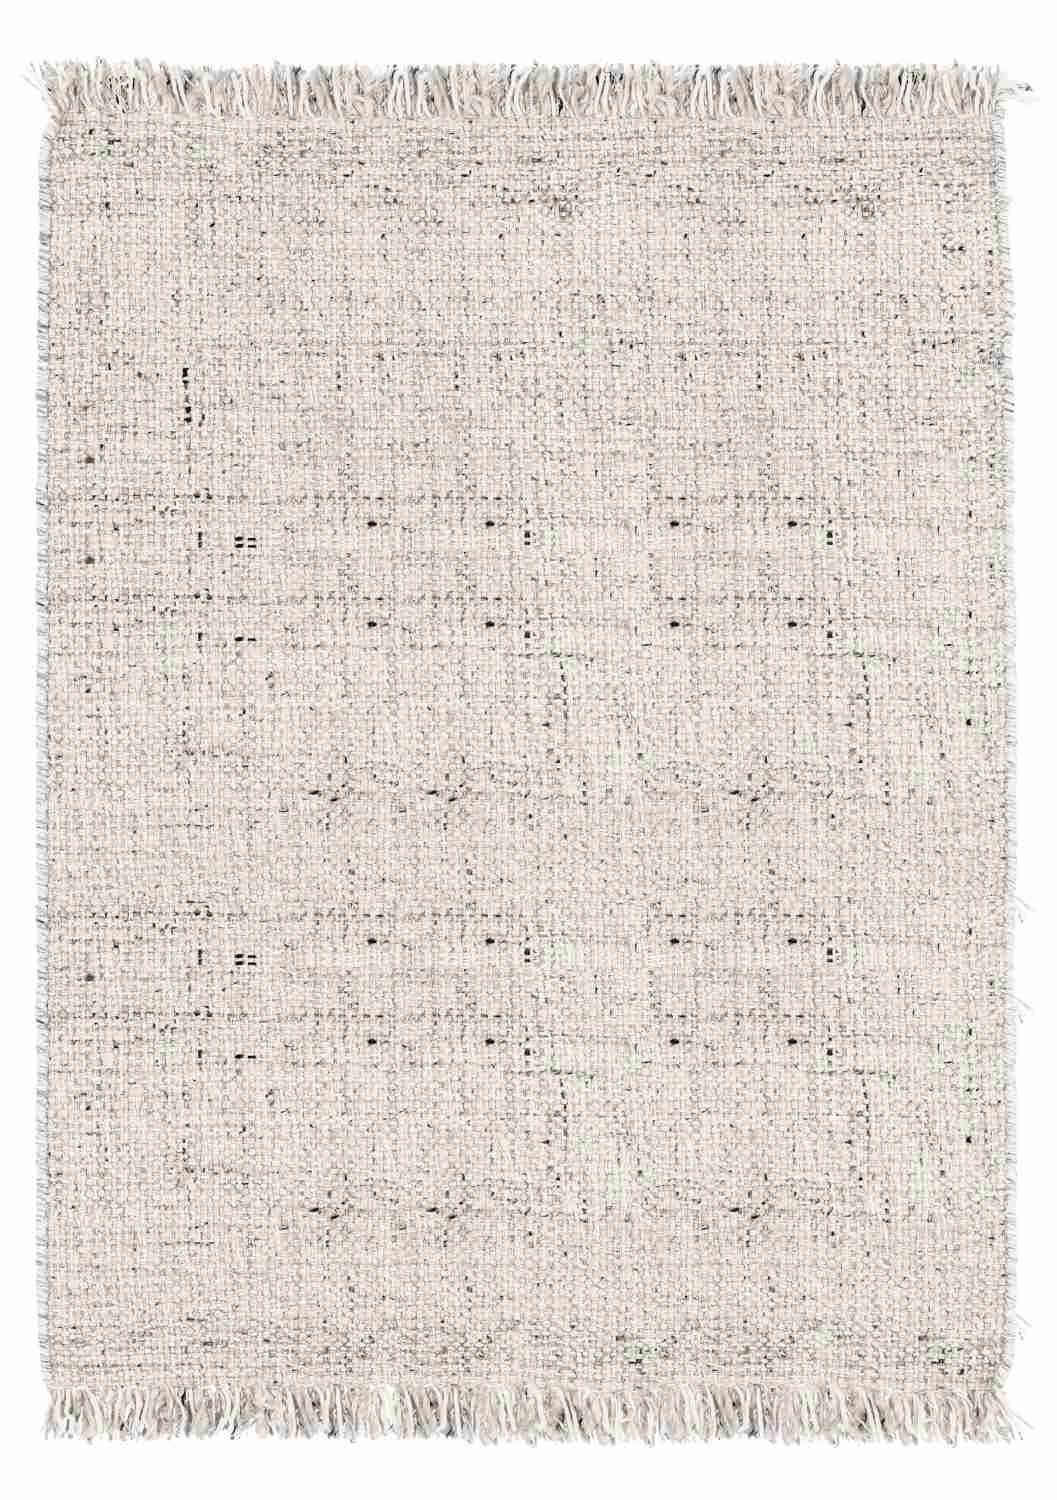 Der Teppich Senuri überzeugt mit seinem klassischen Design. Gefertigt wurde die Vorderseite aus 70% Polyester und 30% Wolle, die Rückseite ist aus Baumwolle. Der Teppich besitzt eine Beige Farbton und die Maße von 160x230 cm.